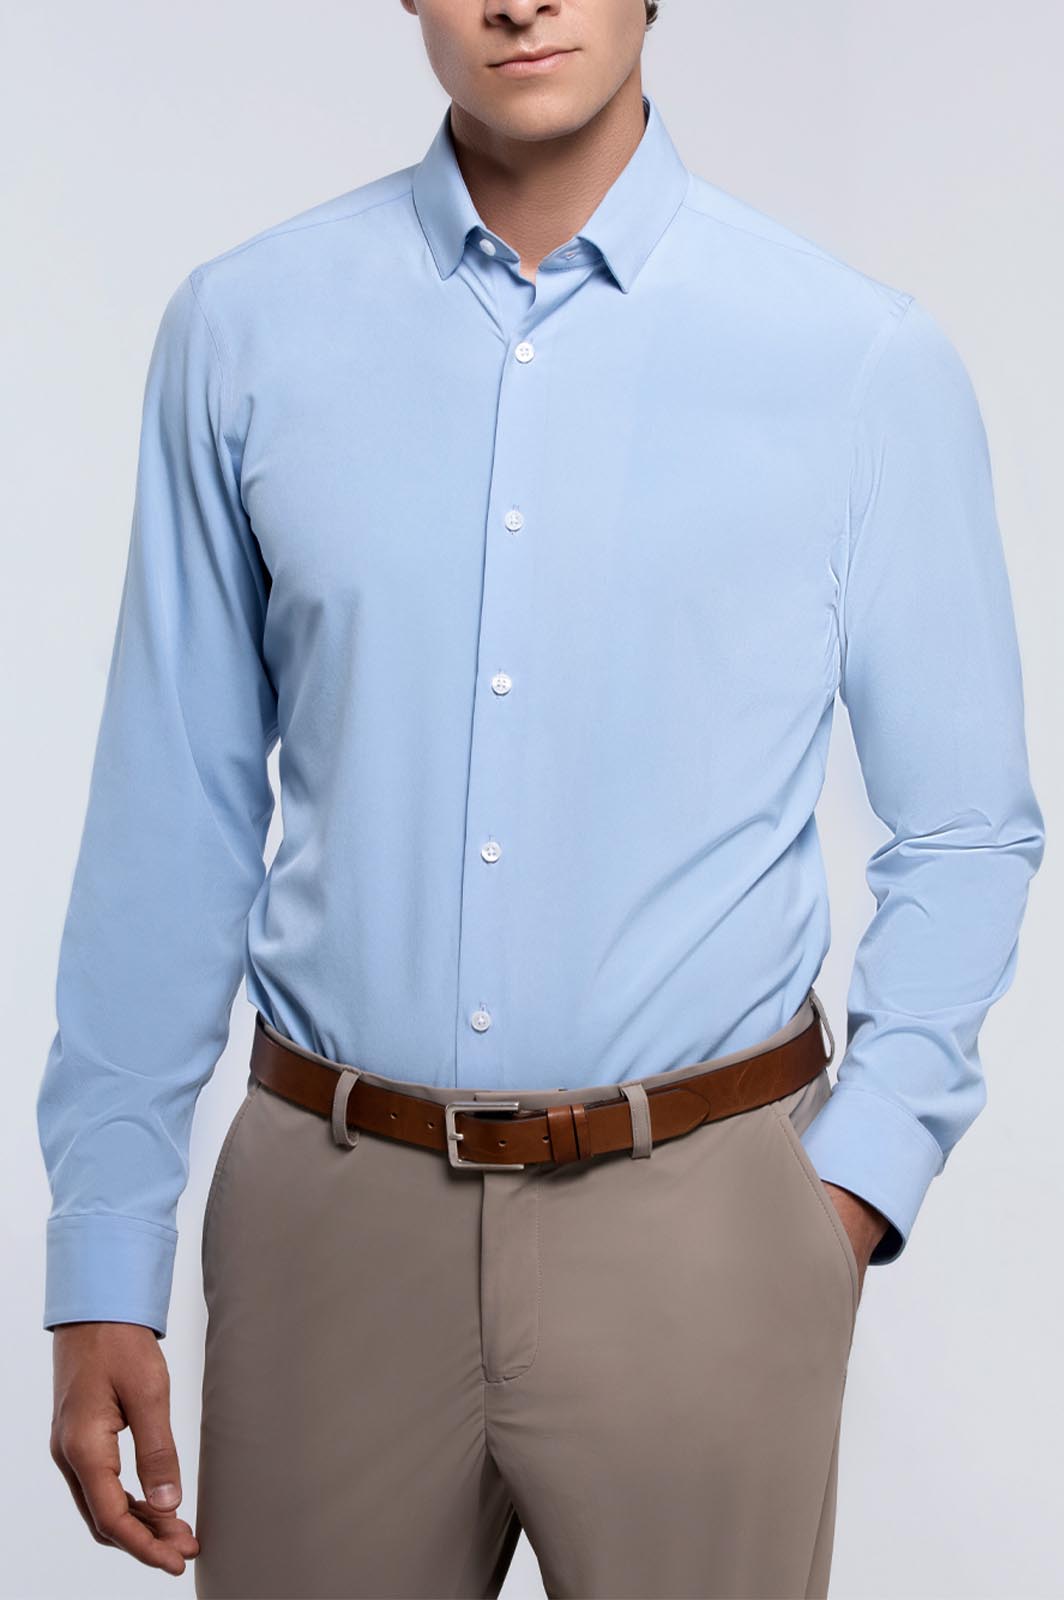 mens light blue dress shirt